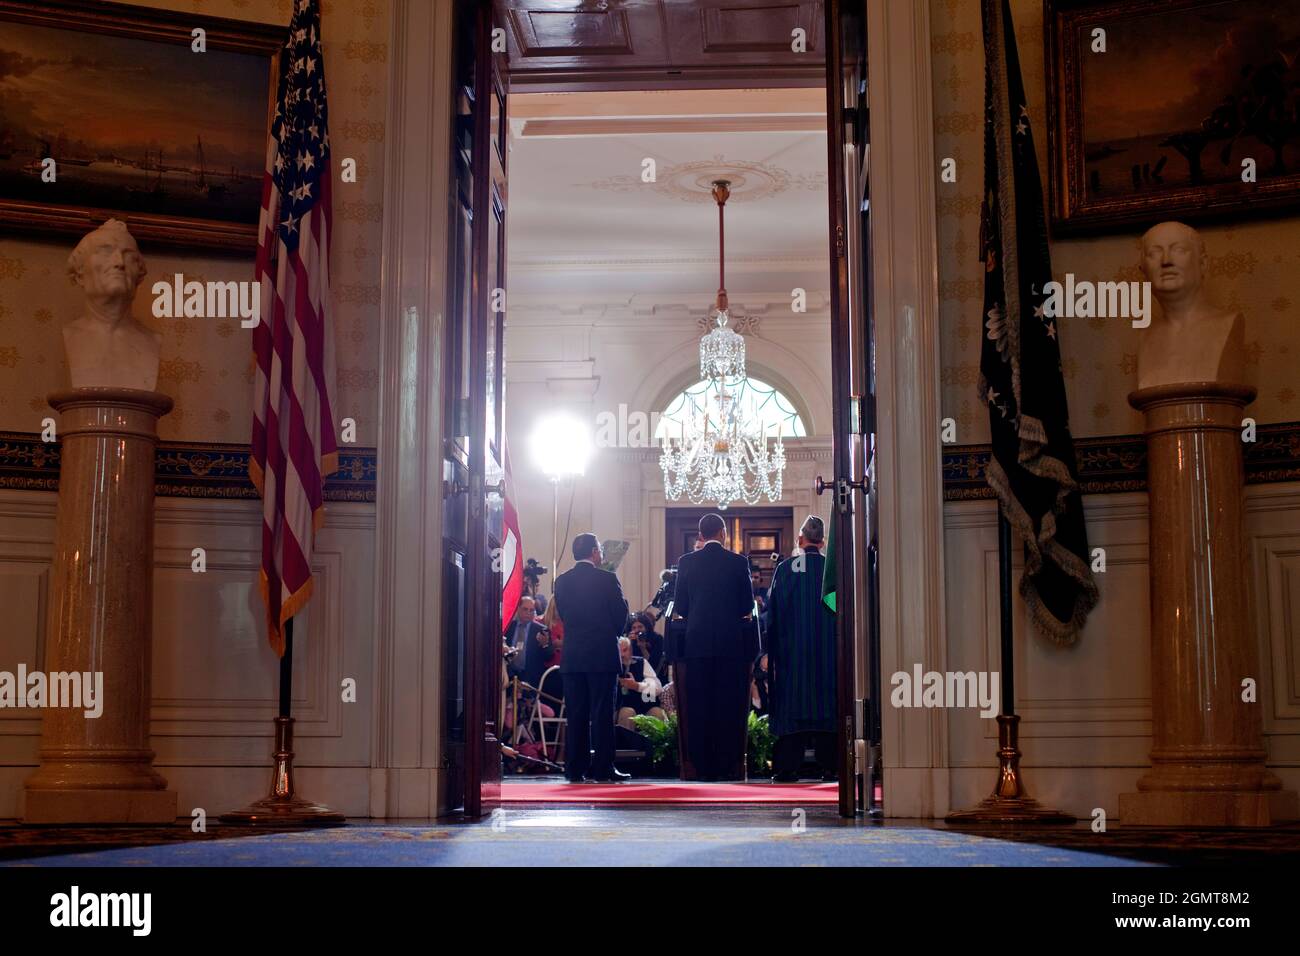 Le président Barack Obama, le président pakistanais Asif Ali Zadari et le président afghan Hamid Karzaï ont fait des remarques aux médias à la suite de leur réunion trilatérale à la Maison Blanche le mercredi 6 mai 2009. Photo officielle de la Maison Blanche par Chuck Kennedy Banque D'Images